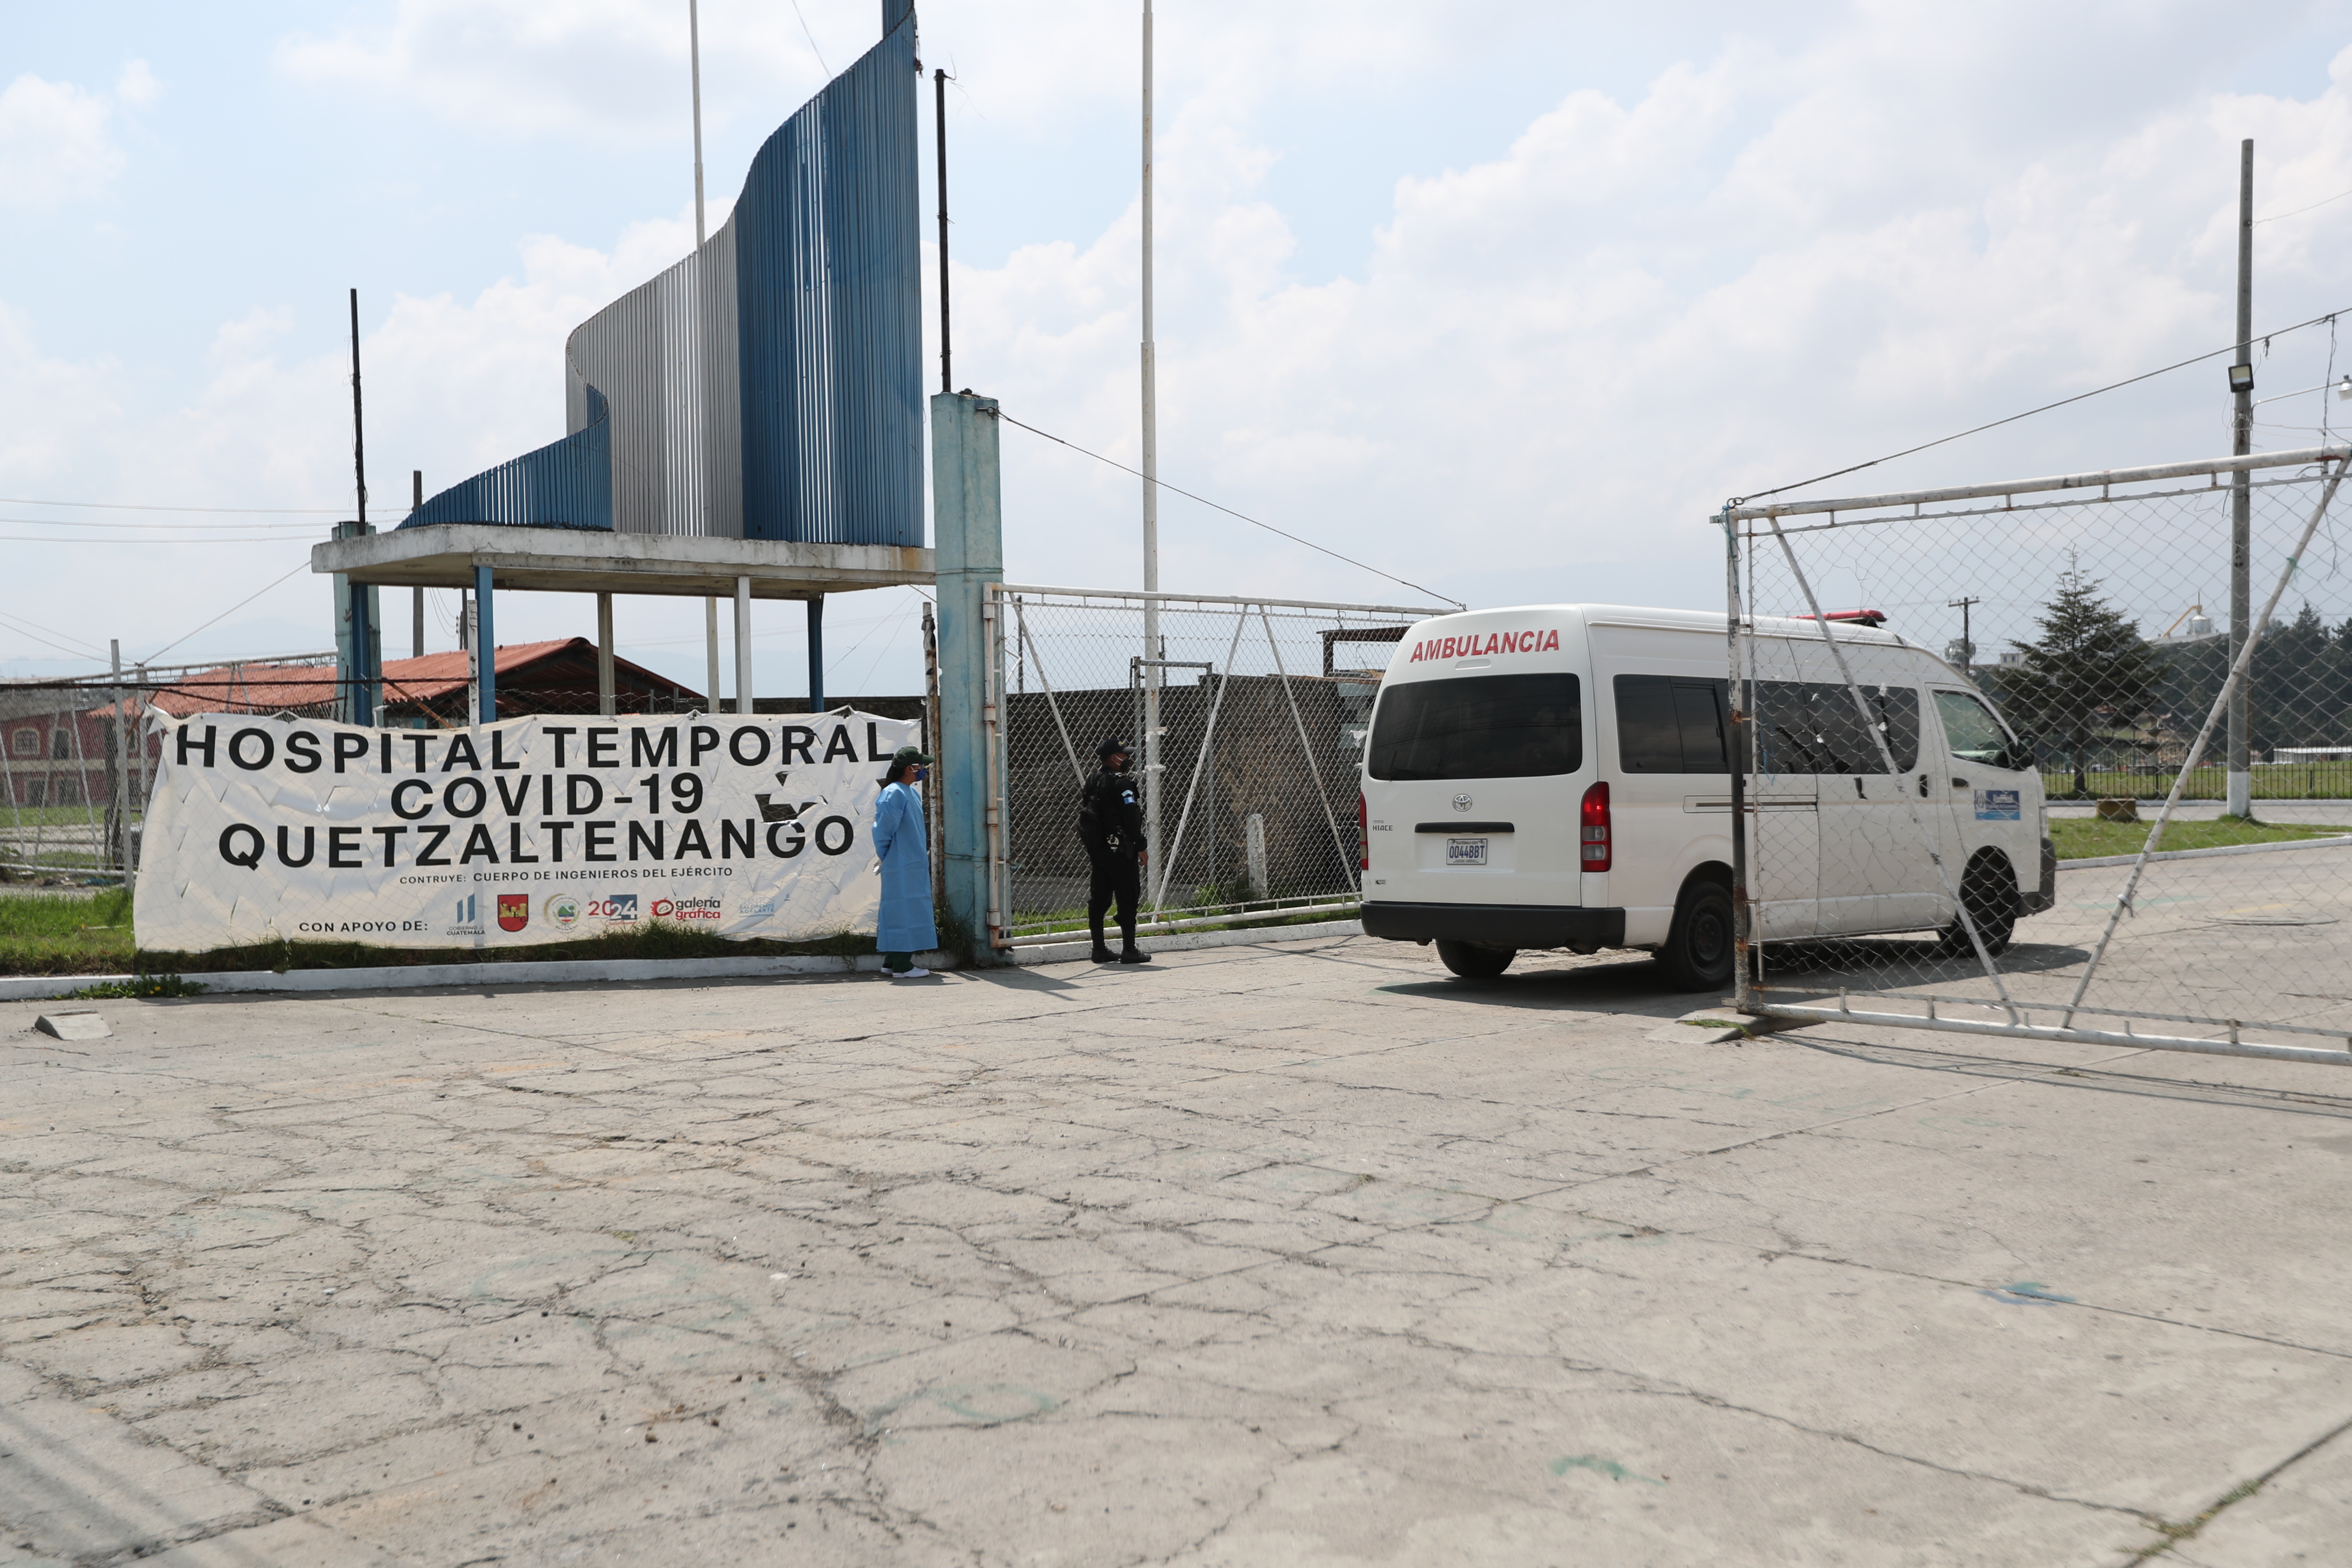 
Los interesados pueden optar a las plazas en el hospital temporal hasta el lunes 18 de mayo. (Foto Prensa Libre: María Longo) 
